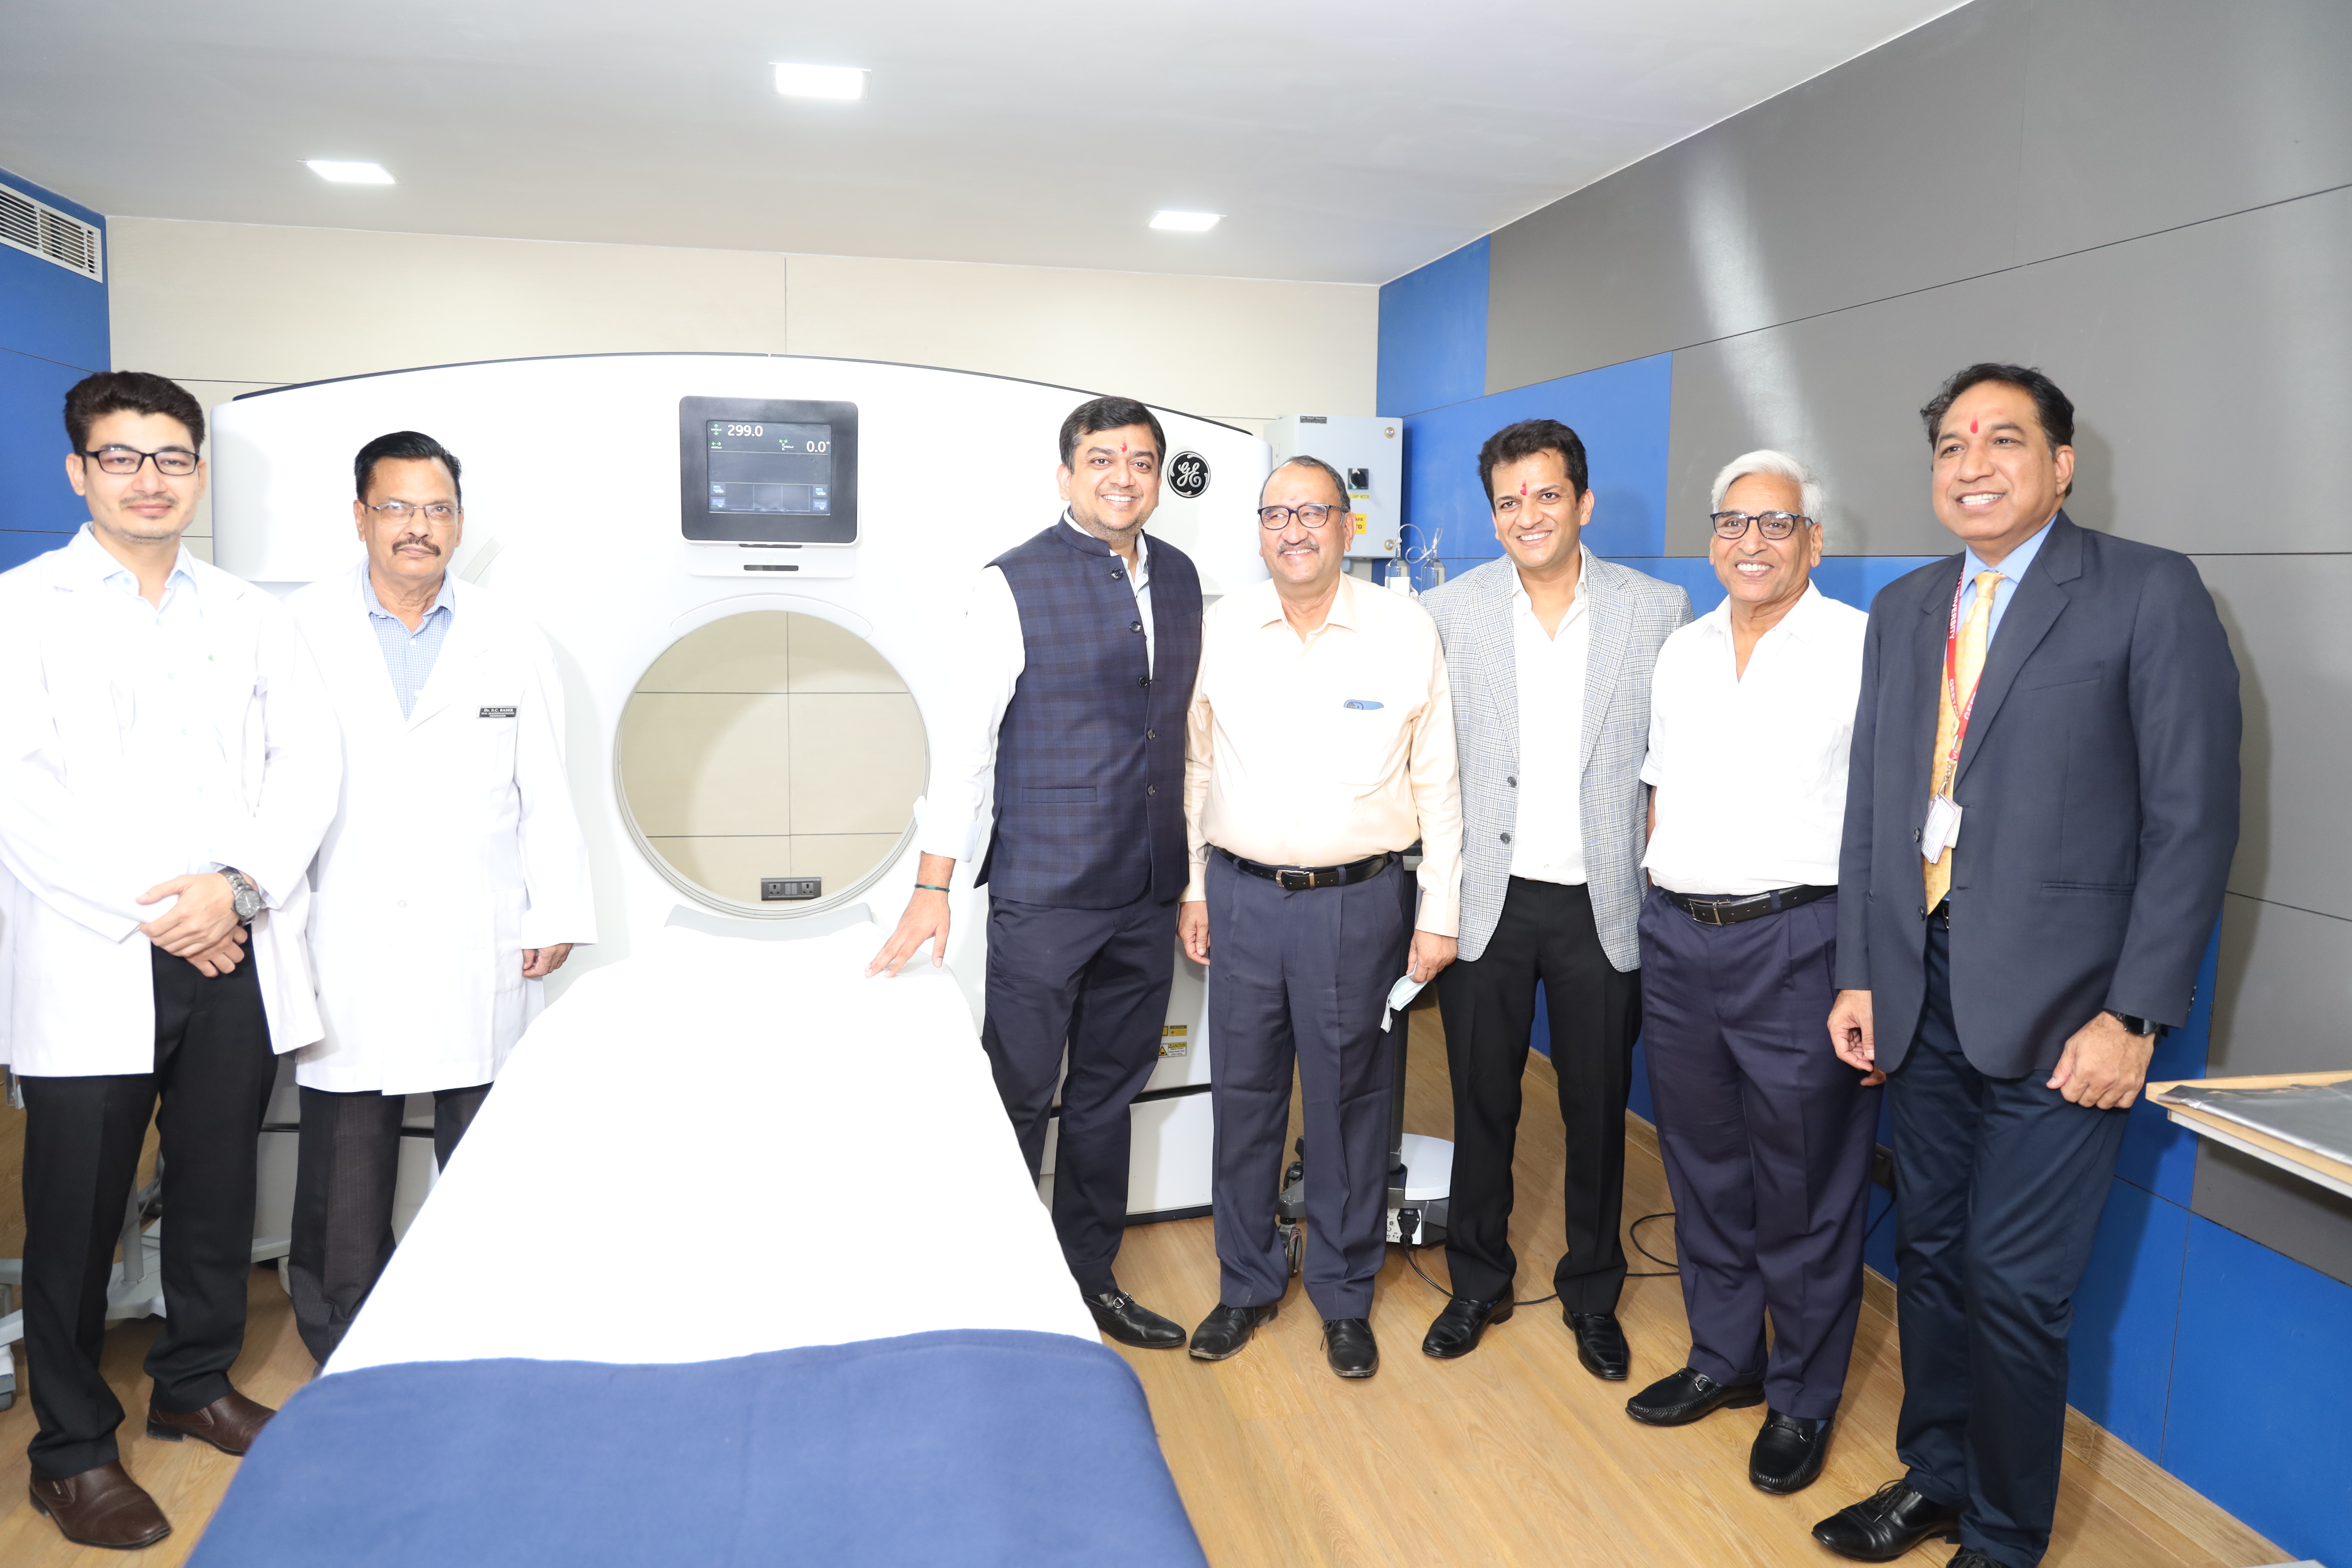 गीतांजली हॉस्पिटल बना राजस्थान का प्रथम 256 स्लाइस सीटी स्कैन मशीन की सुविधा उपलब्ध करवाने वाला हॉस्पिटल